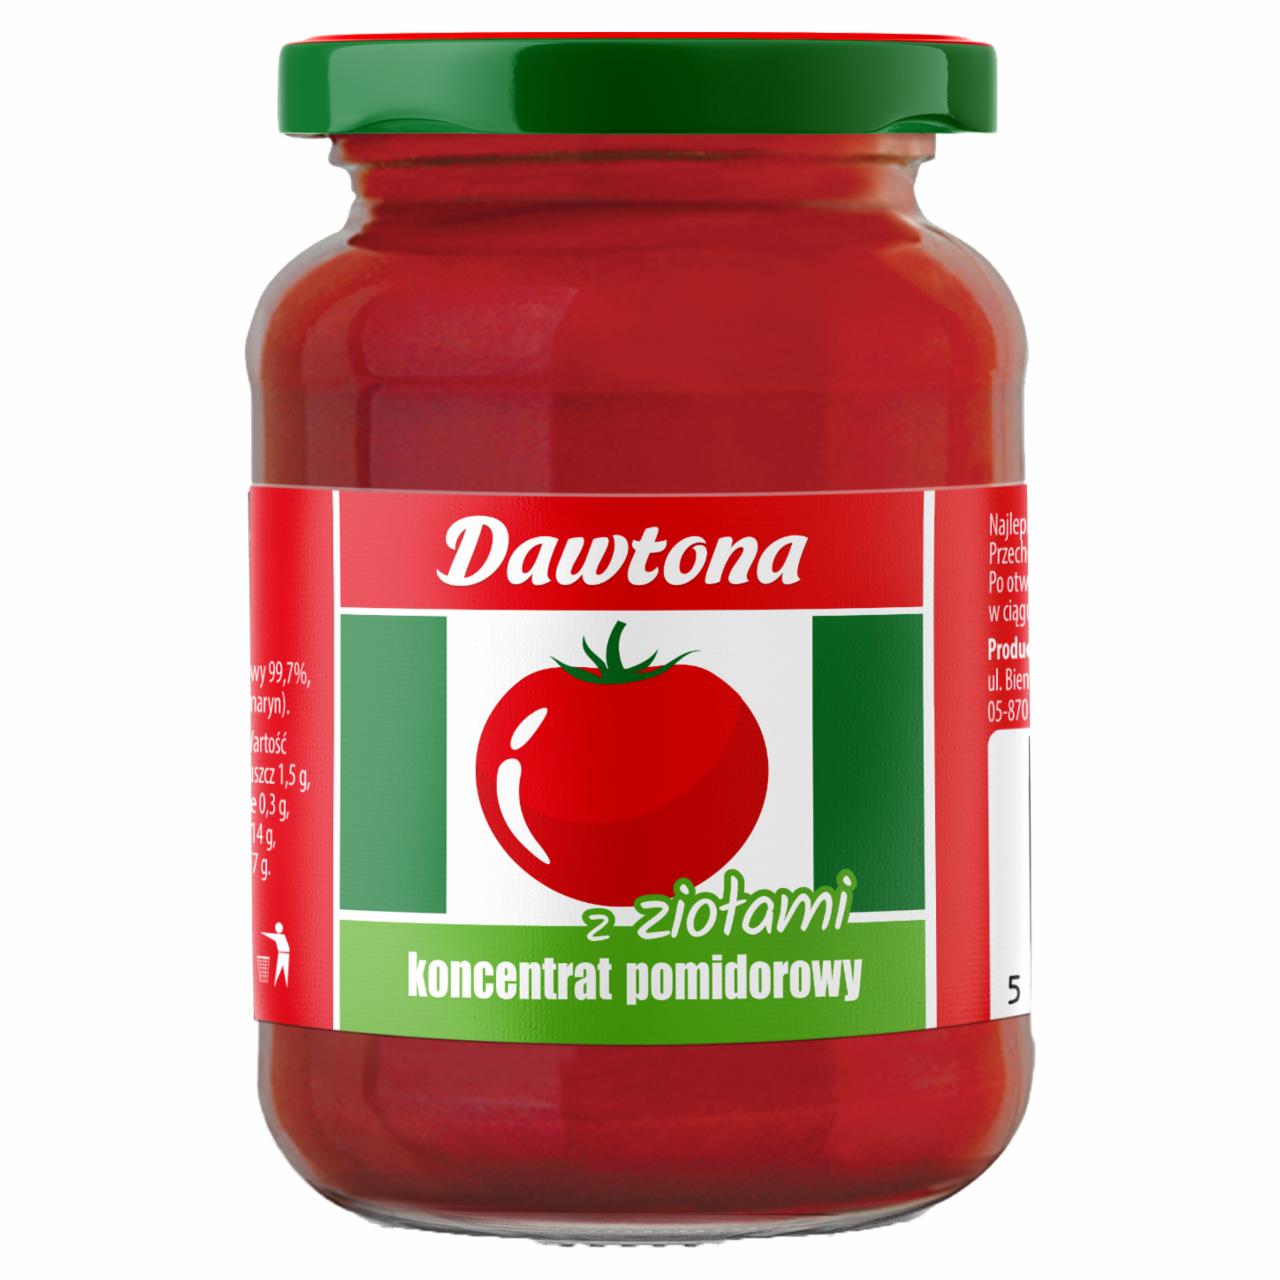 Zdjęcia - Dawtona Koncentrat pomidorowy z ziołami 200 g